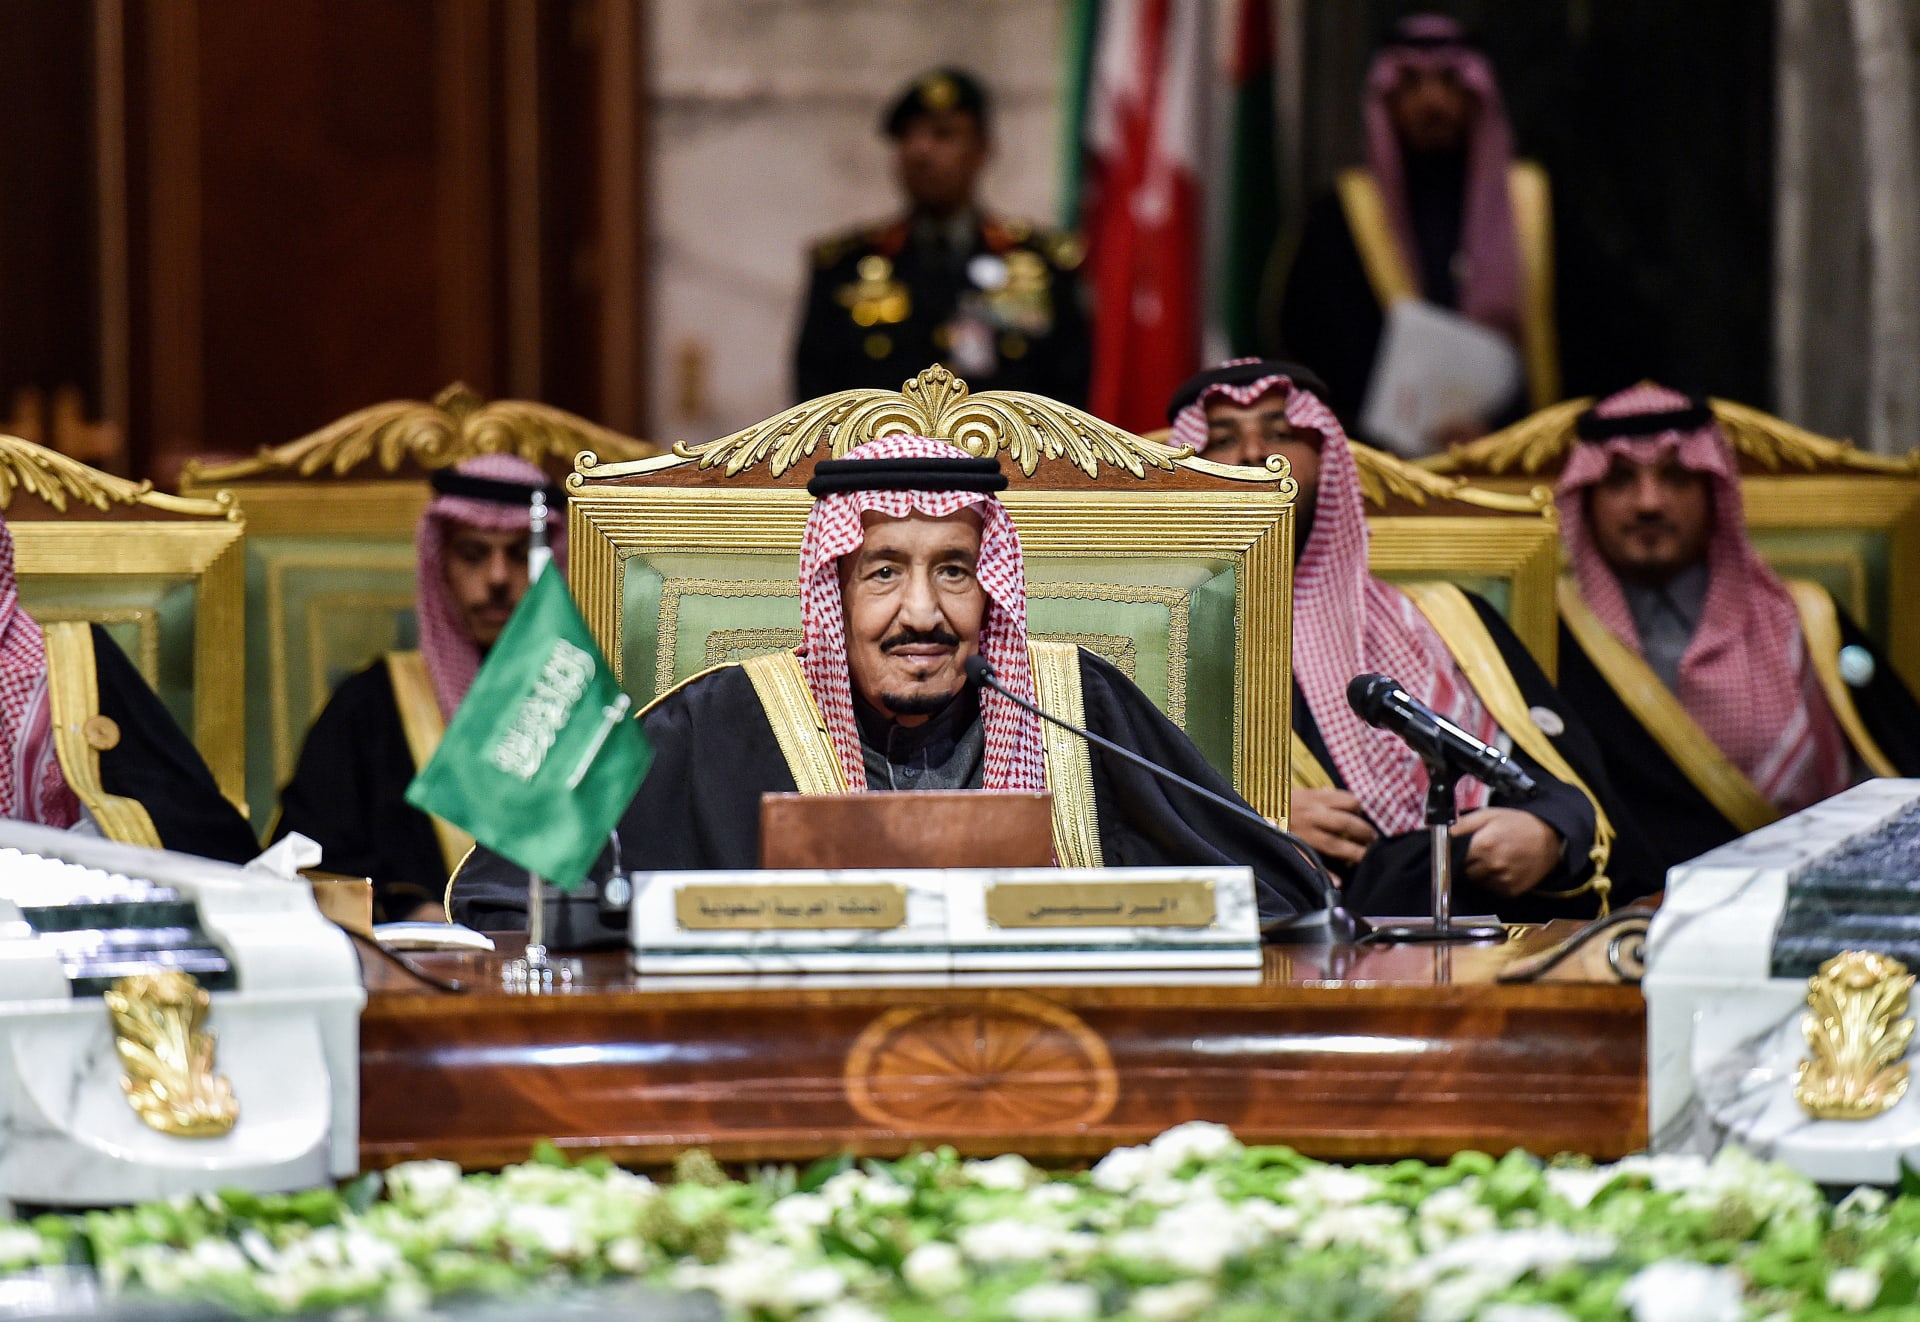 العاهل السعودي، الملك سلمان بن عبدالعزيز